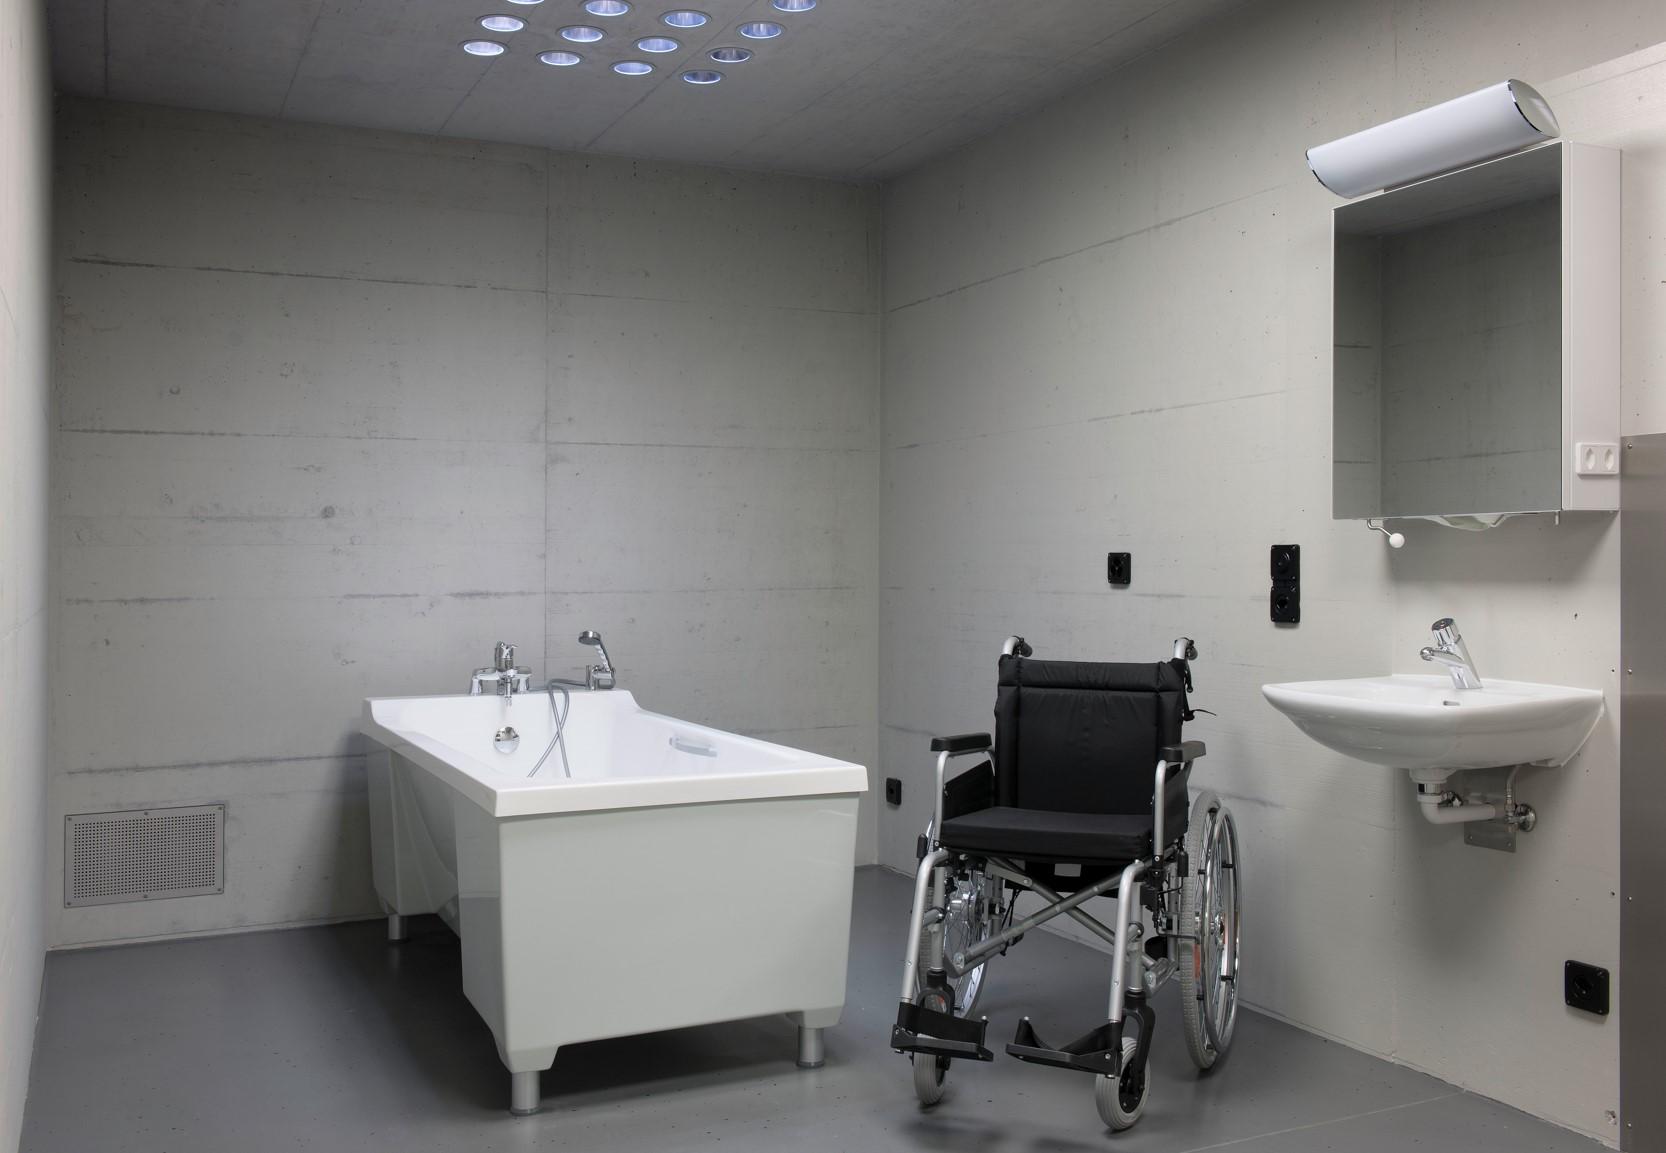 Chaise roulante et baignoire dans une cellule.